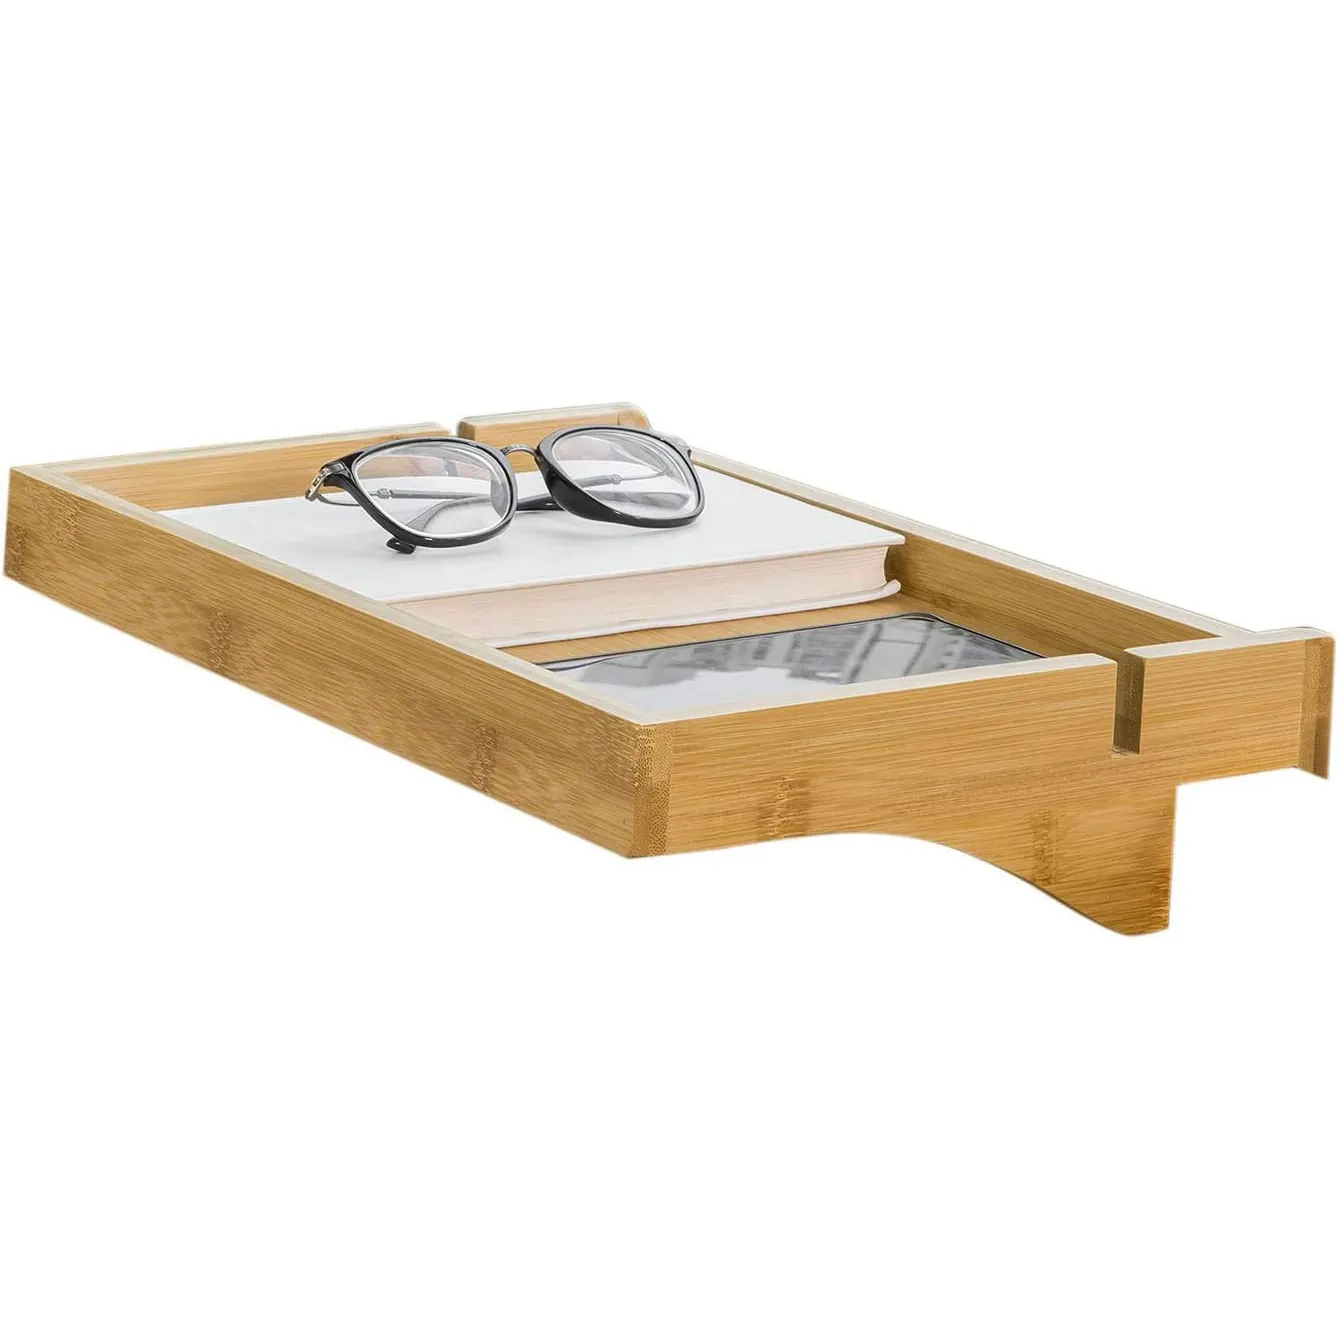 원격 제어를 위한 케이블 가이드 침대 Bedside 테이블 선반을 가진 대나무 침대 선반